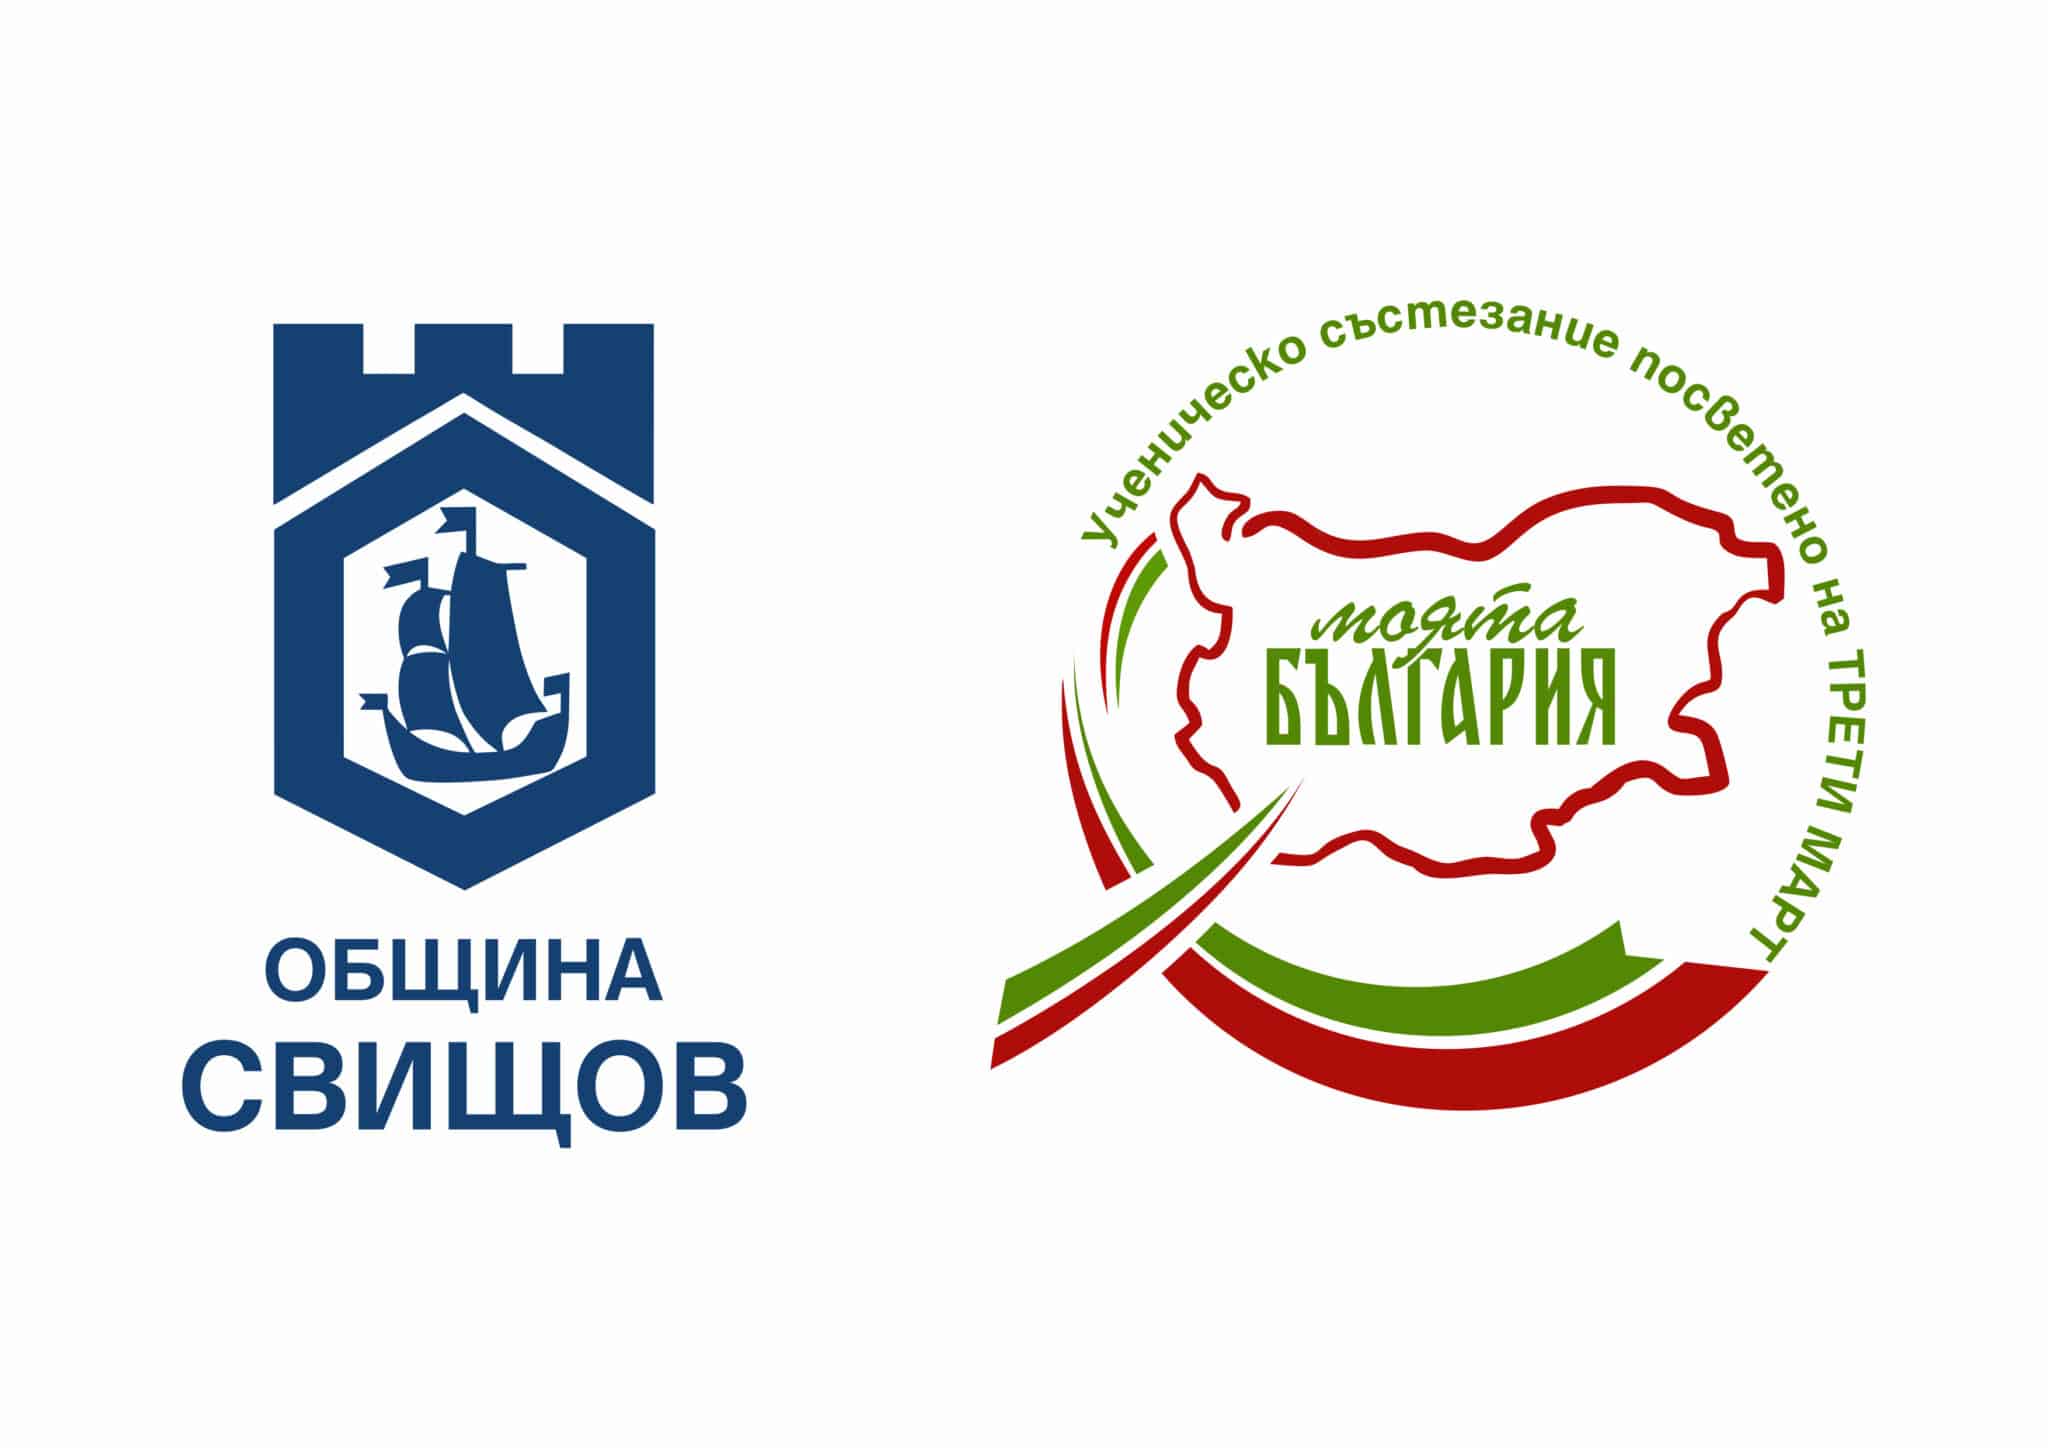 В Свищов ще се проведе ученическо състезание Моята България посветено